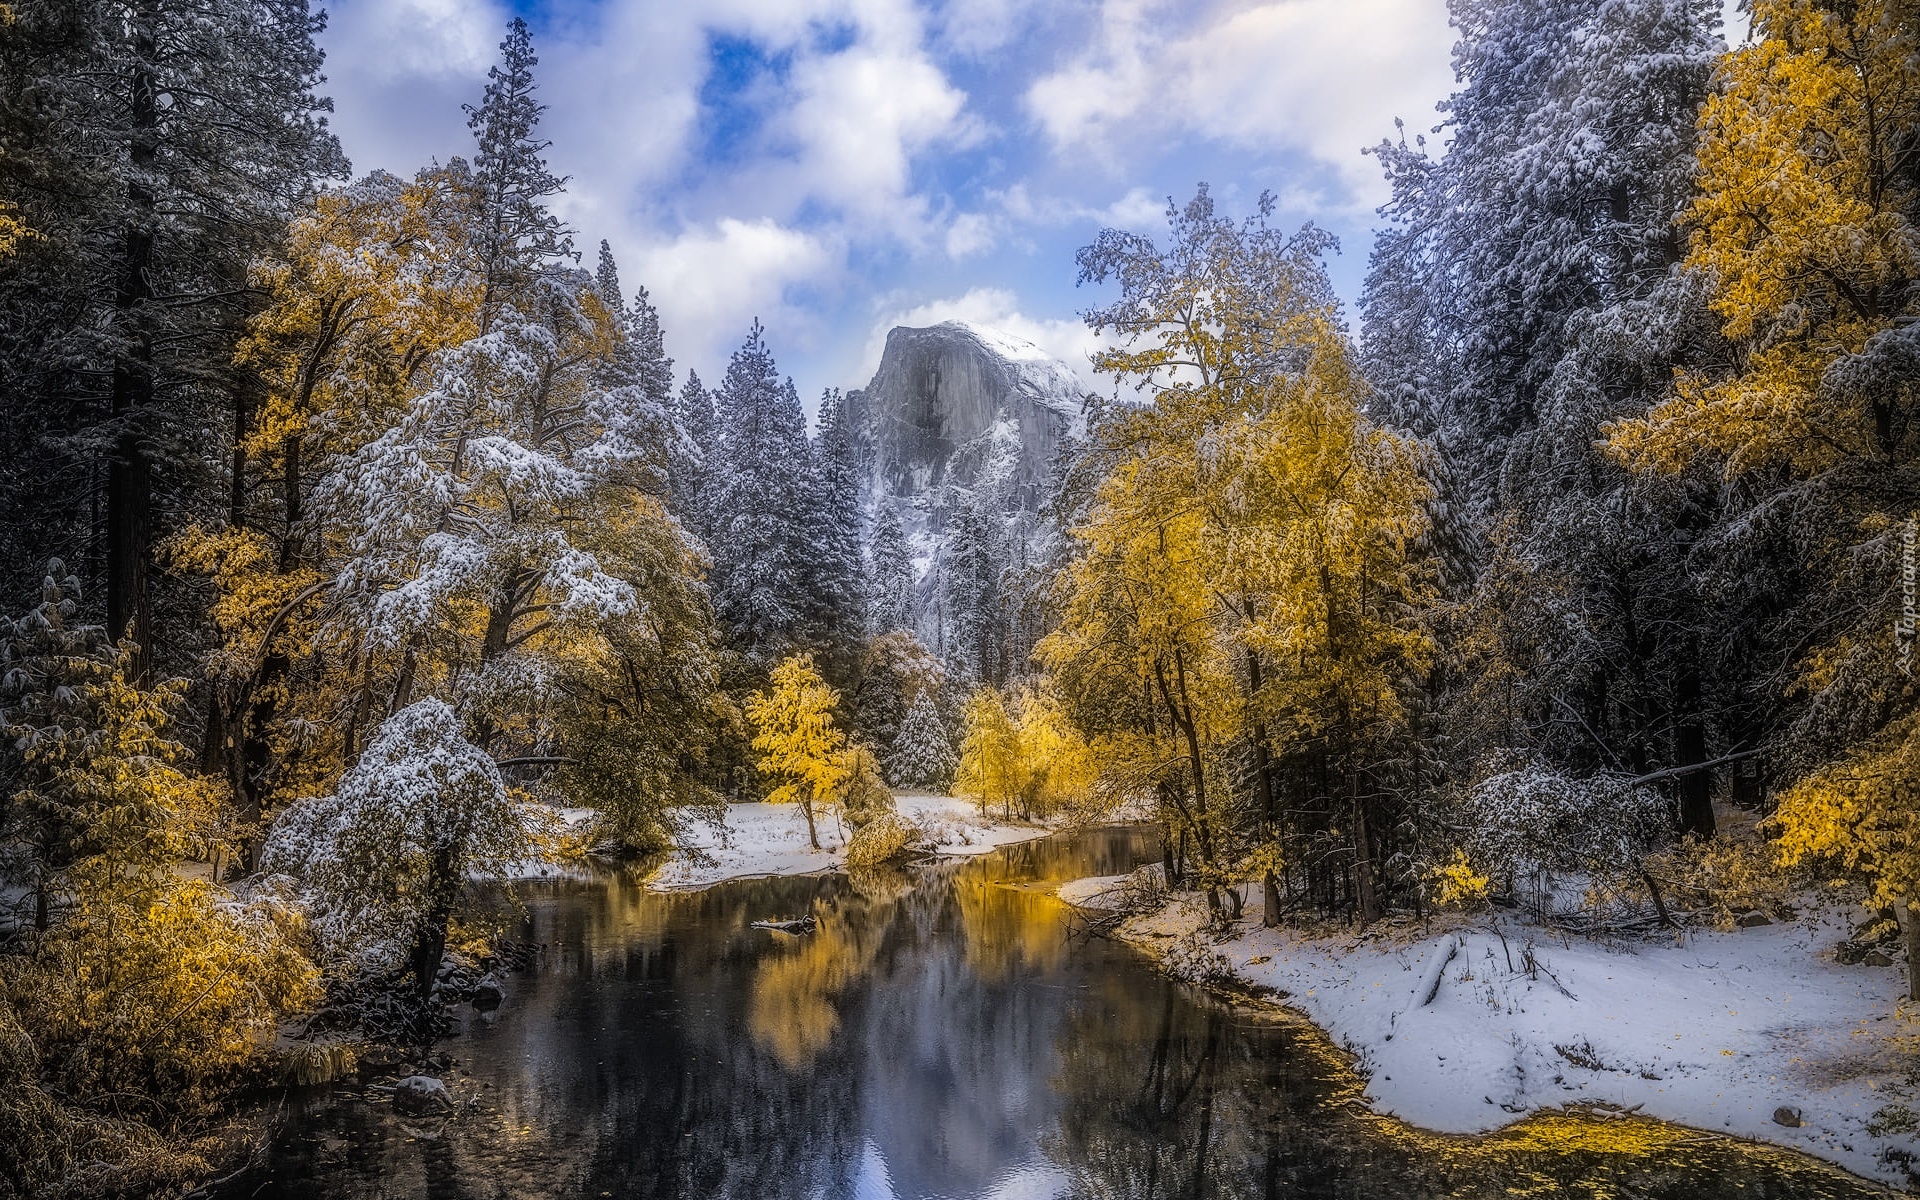 Park Narodowy Yosemite, Góra, Half Dome, Rzeka, Merced River, Drzewa, Chmury, Zima, Kalifornia, Stany Zjednoczone